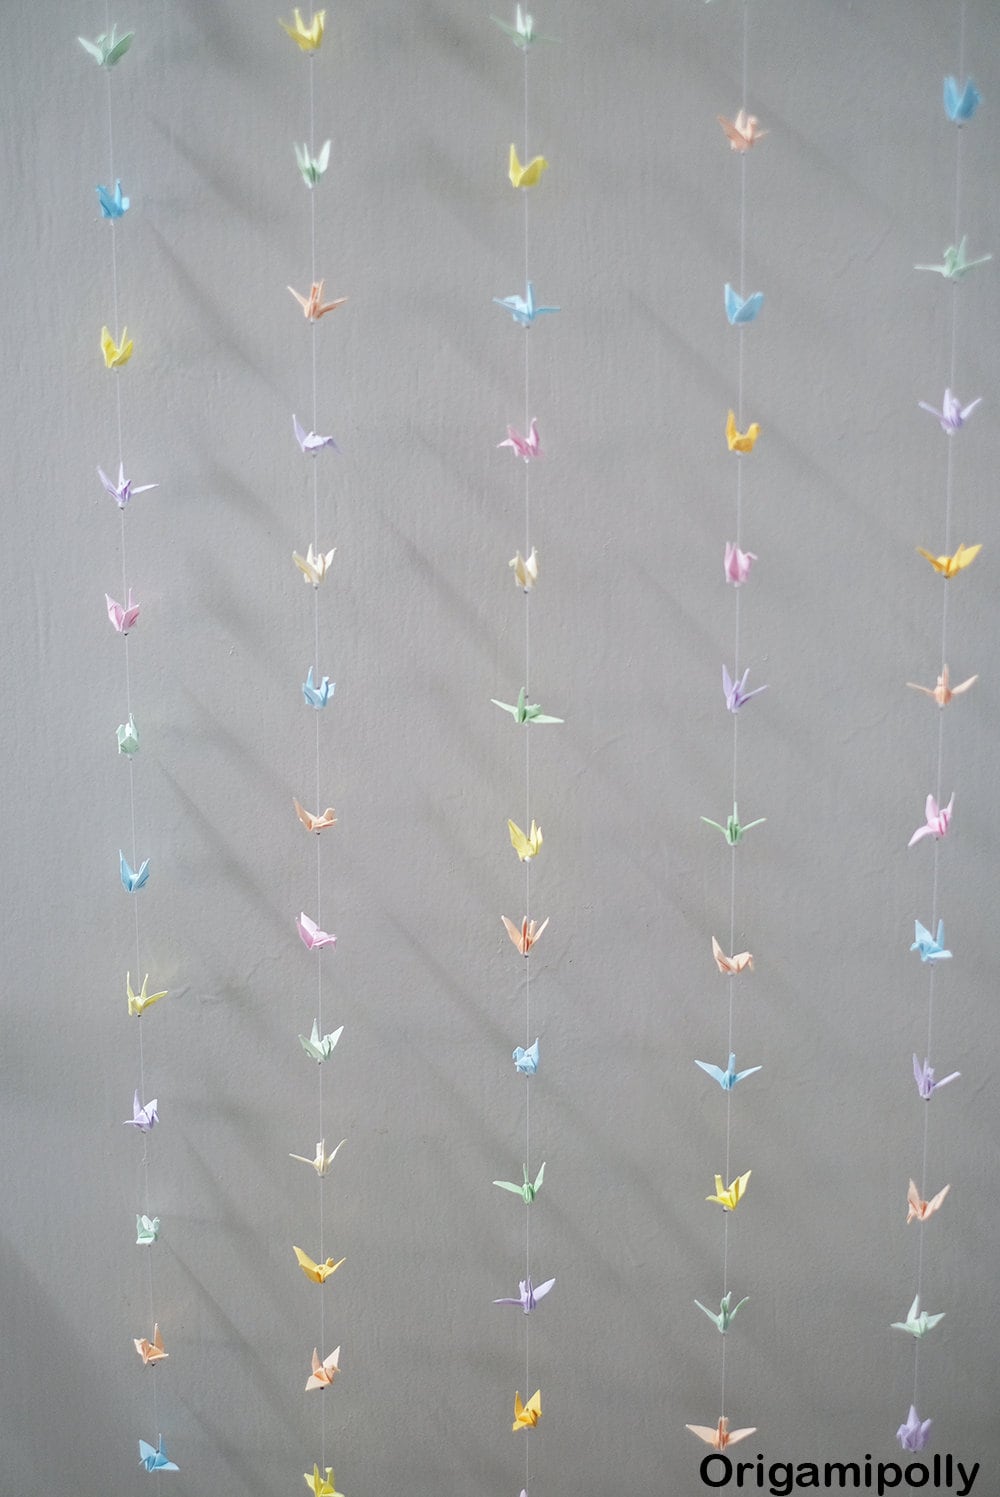 10 Cuerdas 250 Grúa Origami Crane Garland Mixed Coloe Pequeña grúa de papel Origami de 1,5 pulgadas en cuerda para decoración de bodas Origami Garland